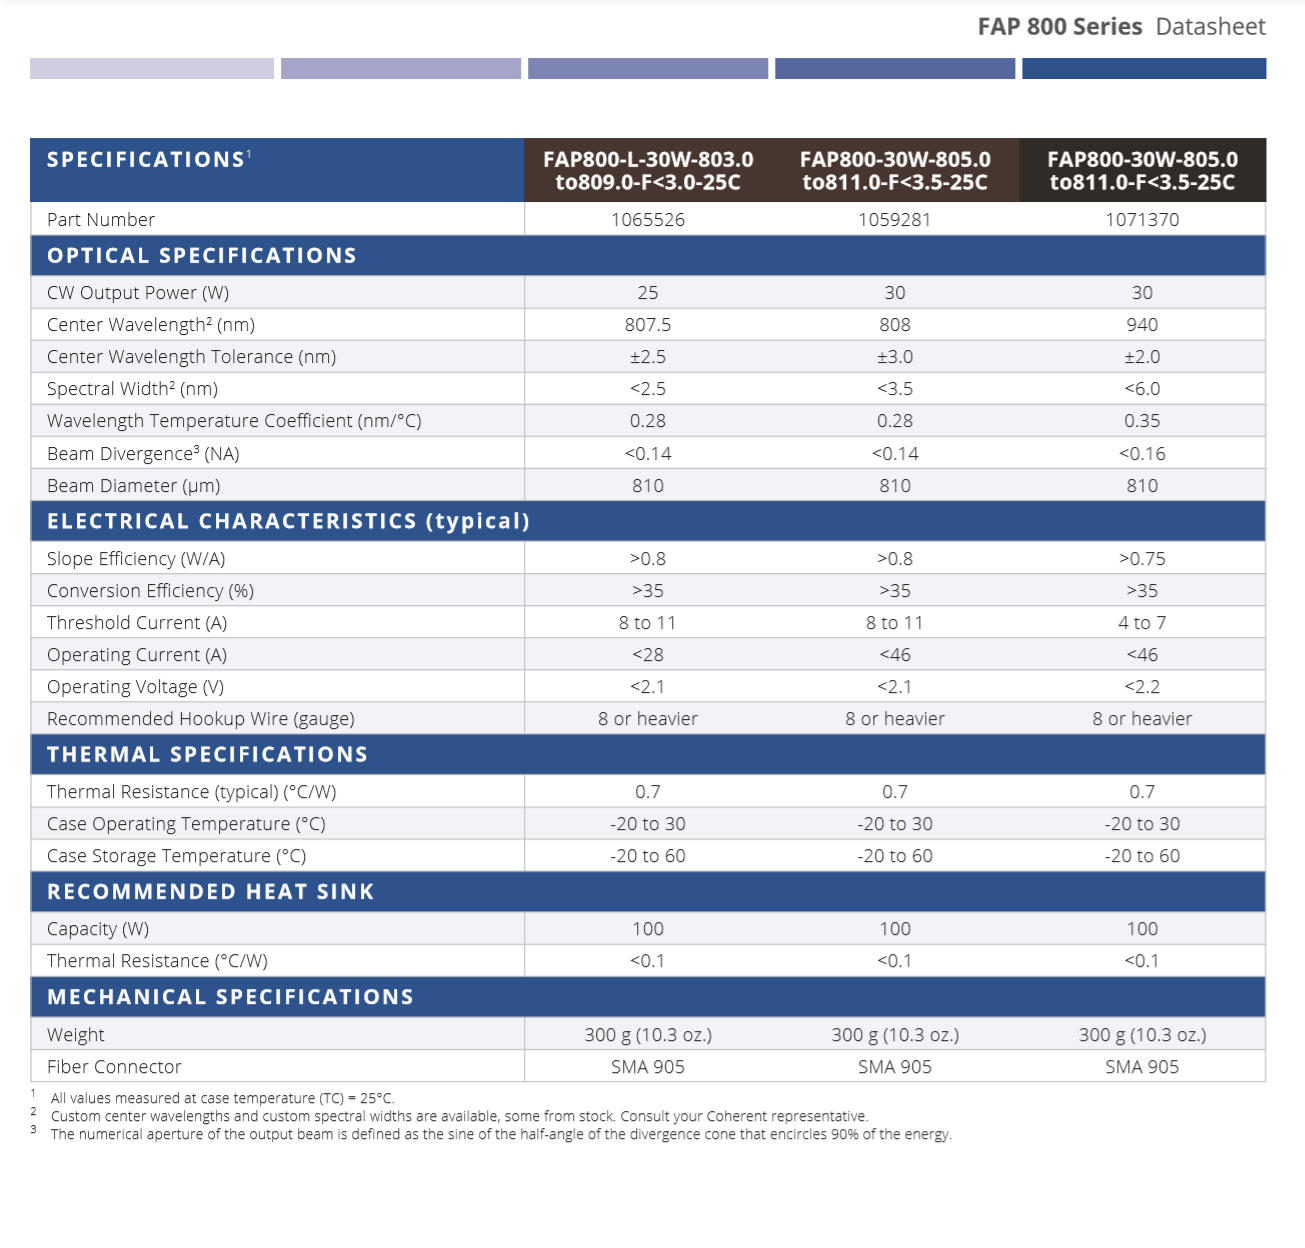 FAP800 data sheet (specs)